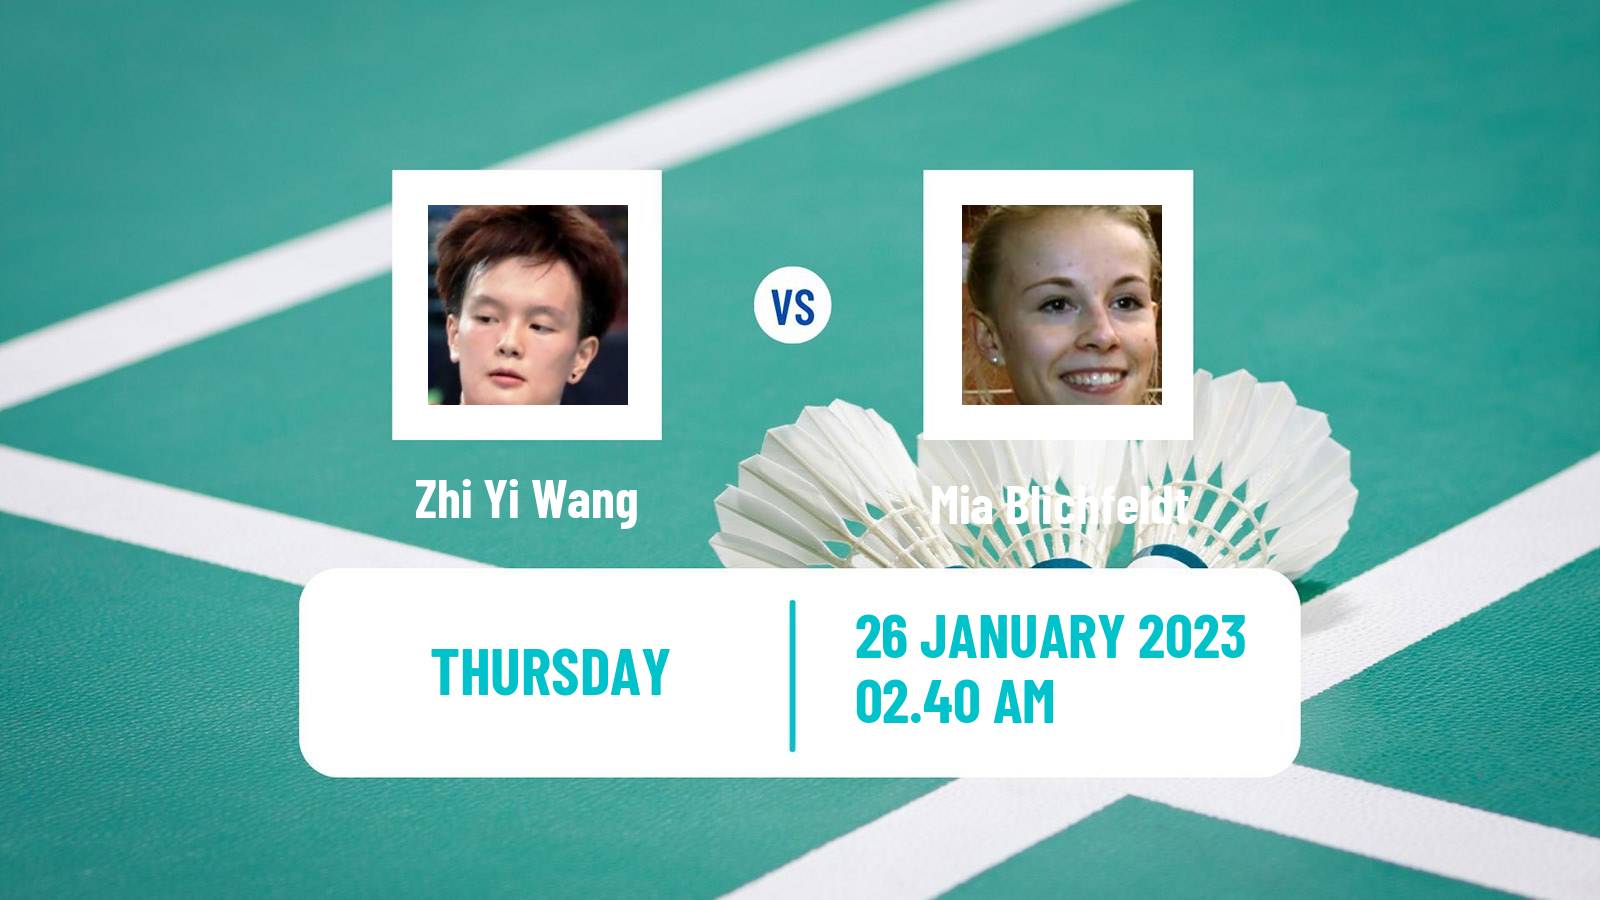 Badminton Badminton Zhi Yi Wang - Mia Blichfeldt